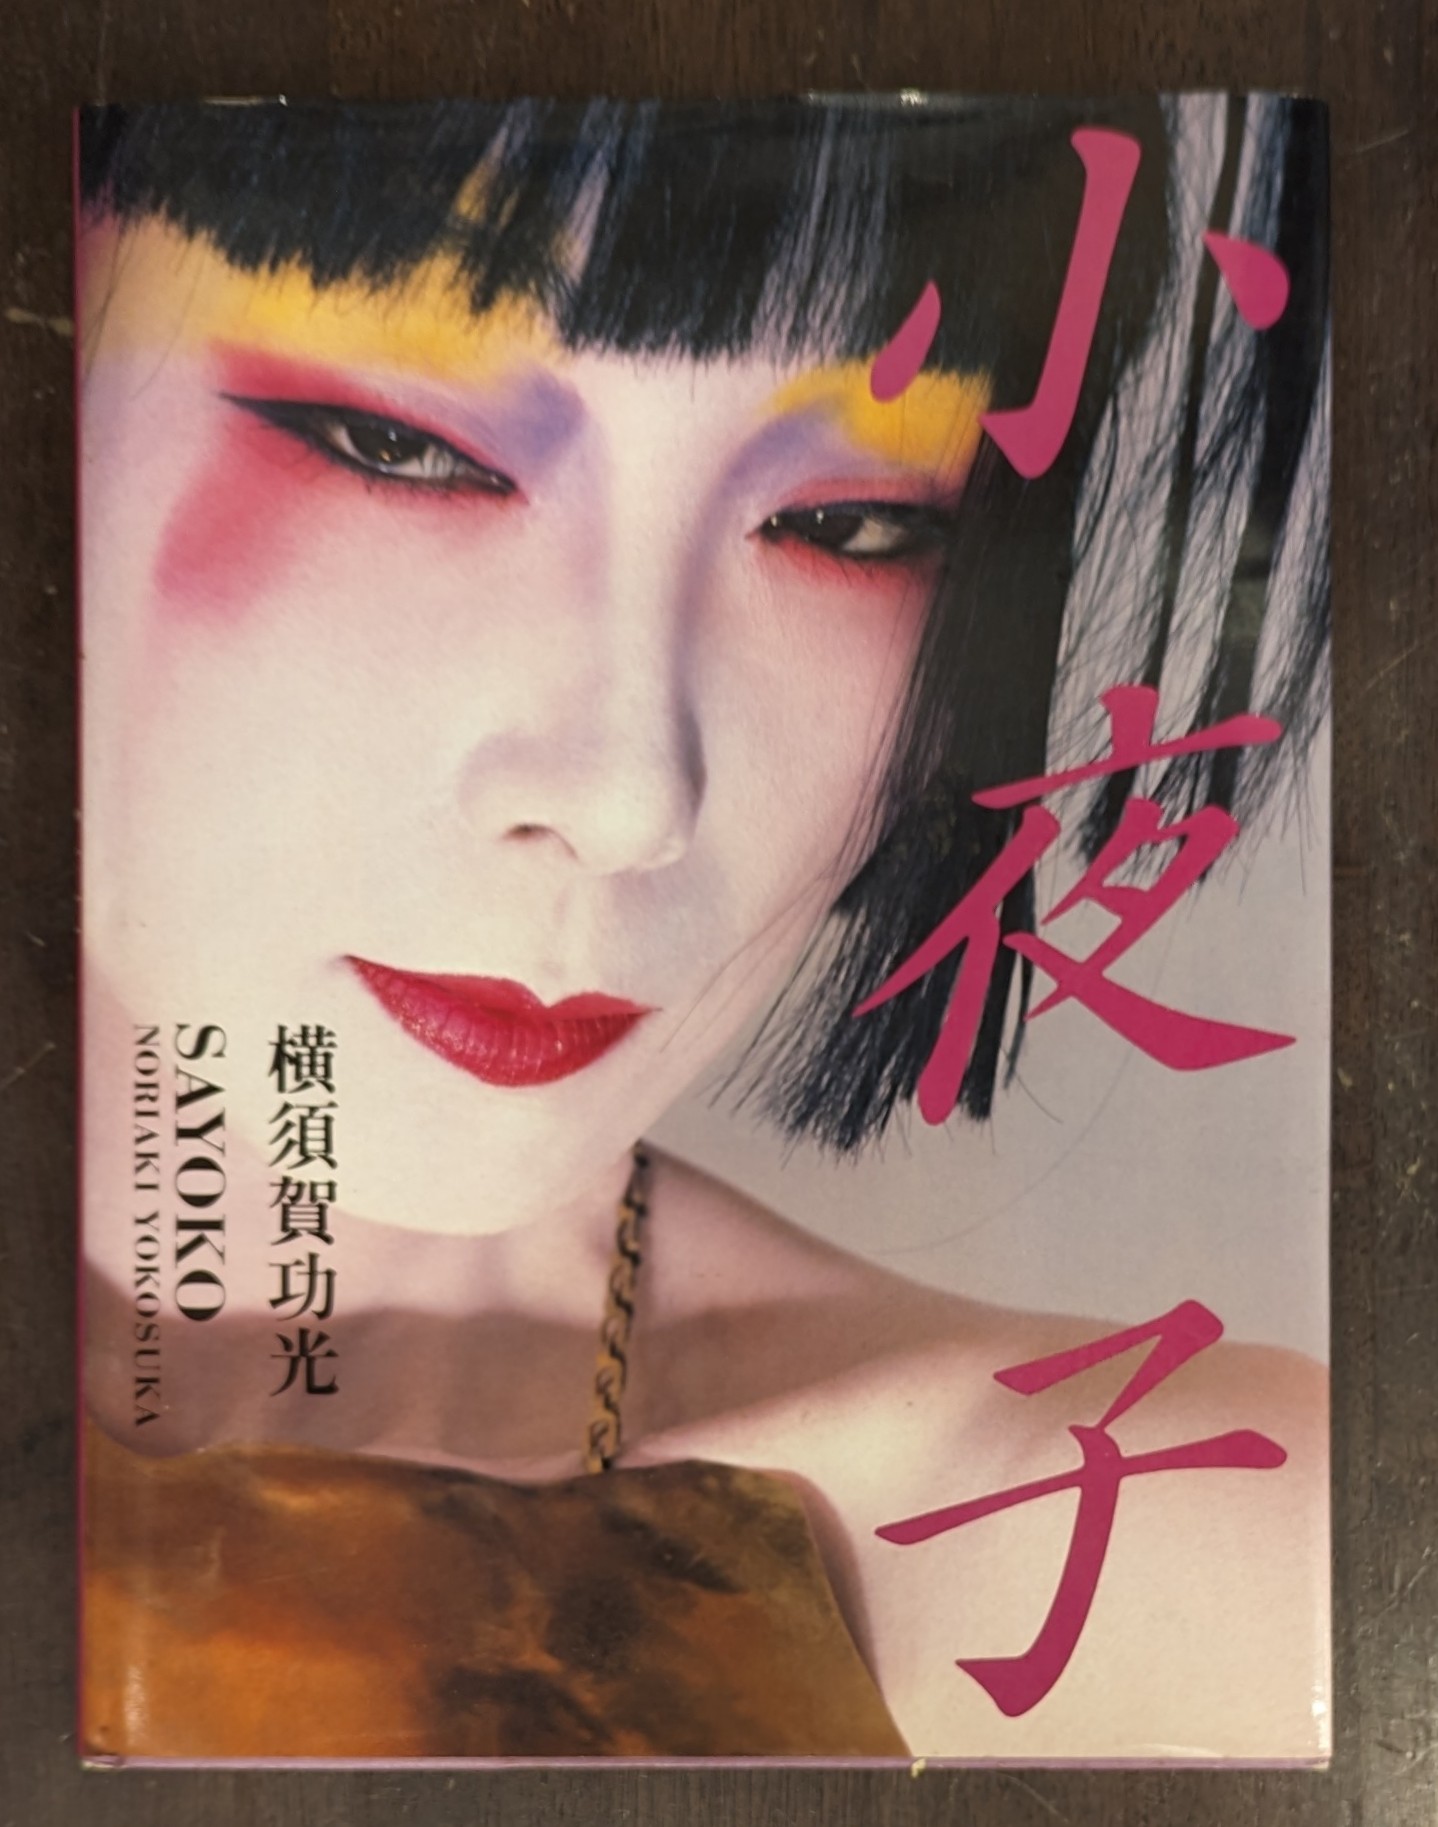 写真集『小夜子』横須賀功光 1984帯に破れシワあります